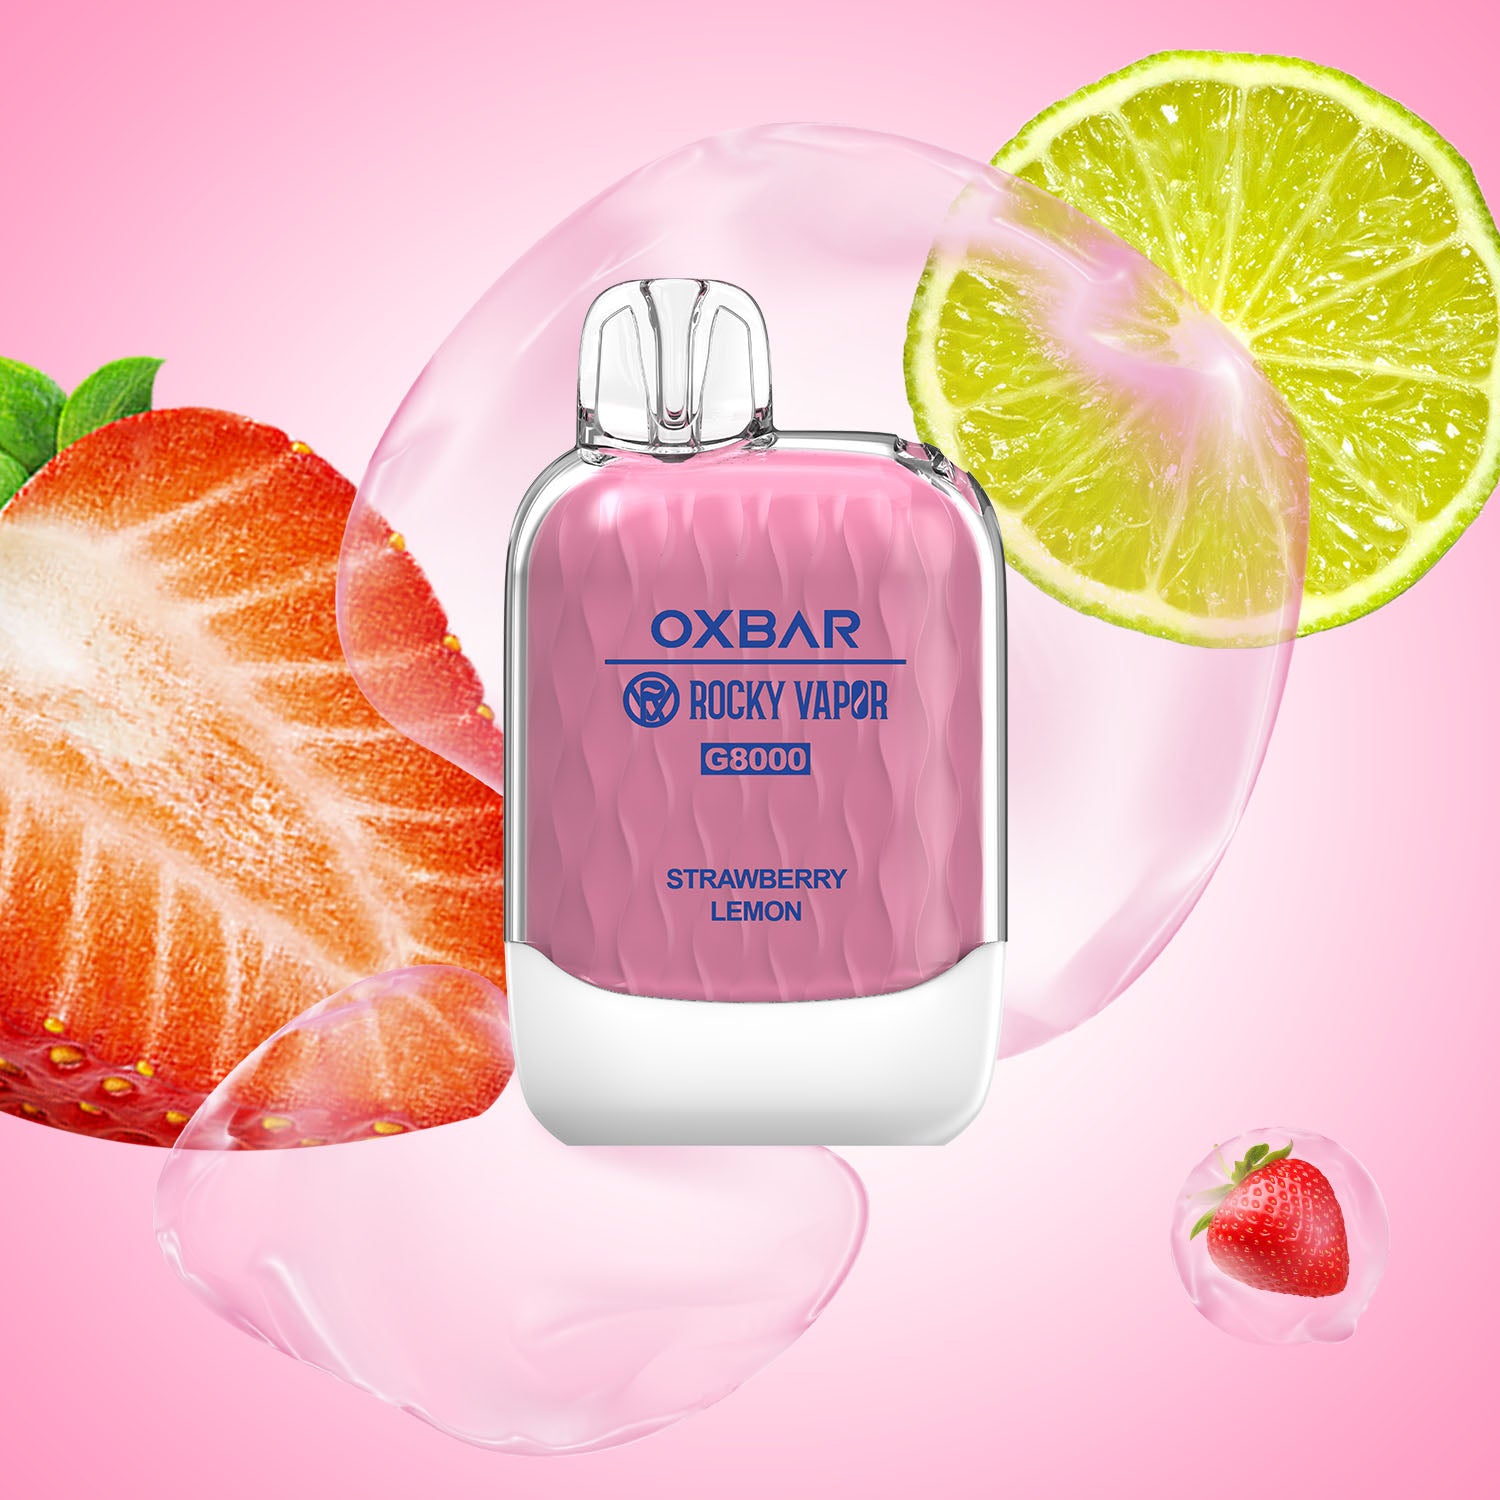 Strawberry Lemon - OXBAR G8000 - 20mg - 5pc/box